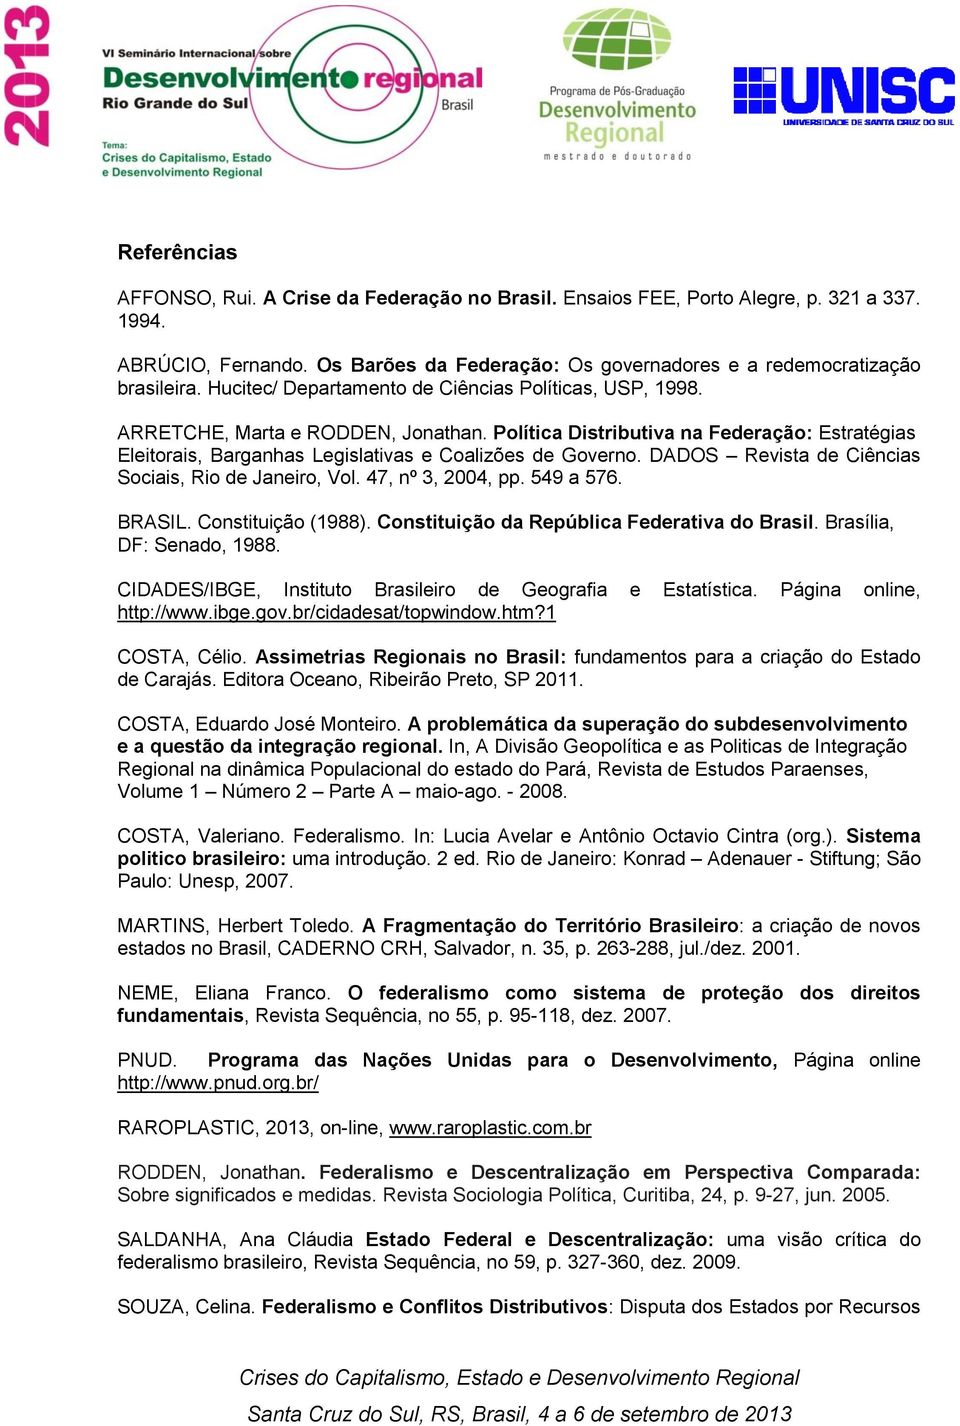 DADOS Revista de Ciências Sociais, Rio de Janeiro, Vol. 47, nº 3, 2004, pp. 549 a 576. BRASIL. Constituição (1988). Constituição da República Federativa do Brasil. Brasília, DF: Senado, 1988.